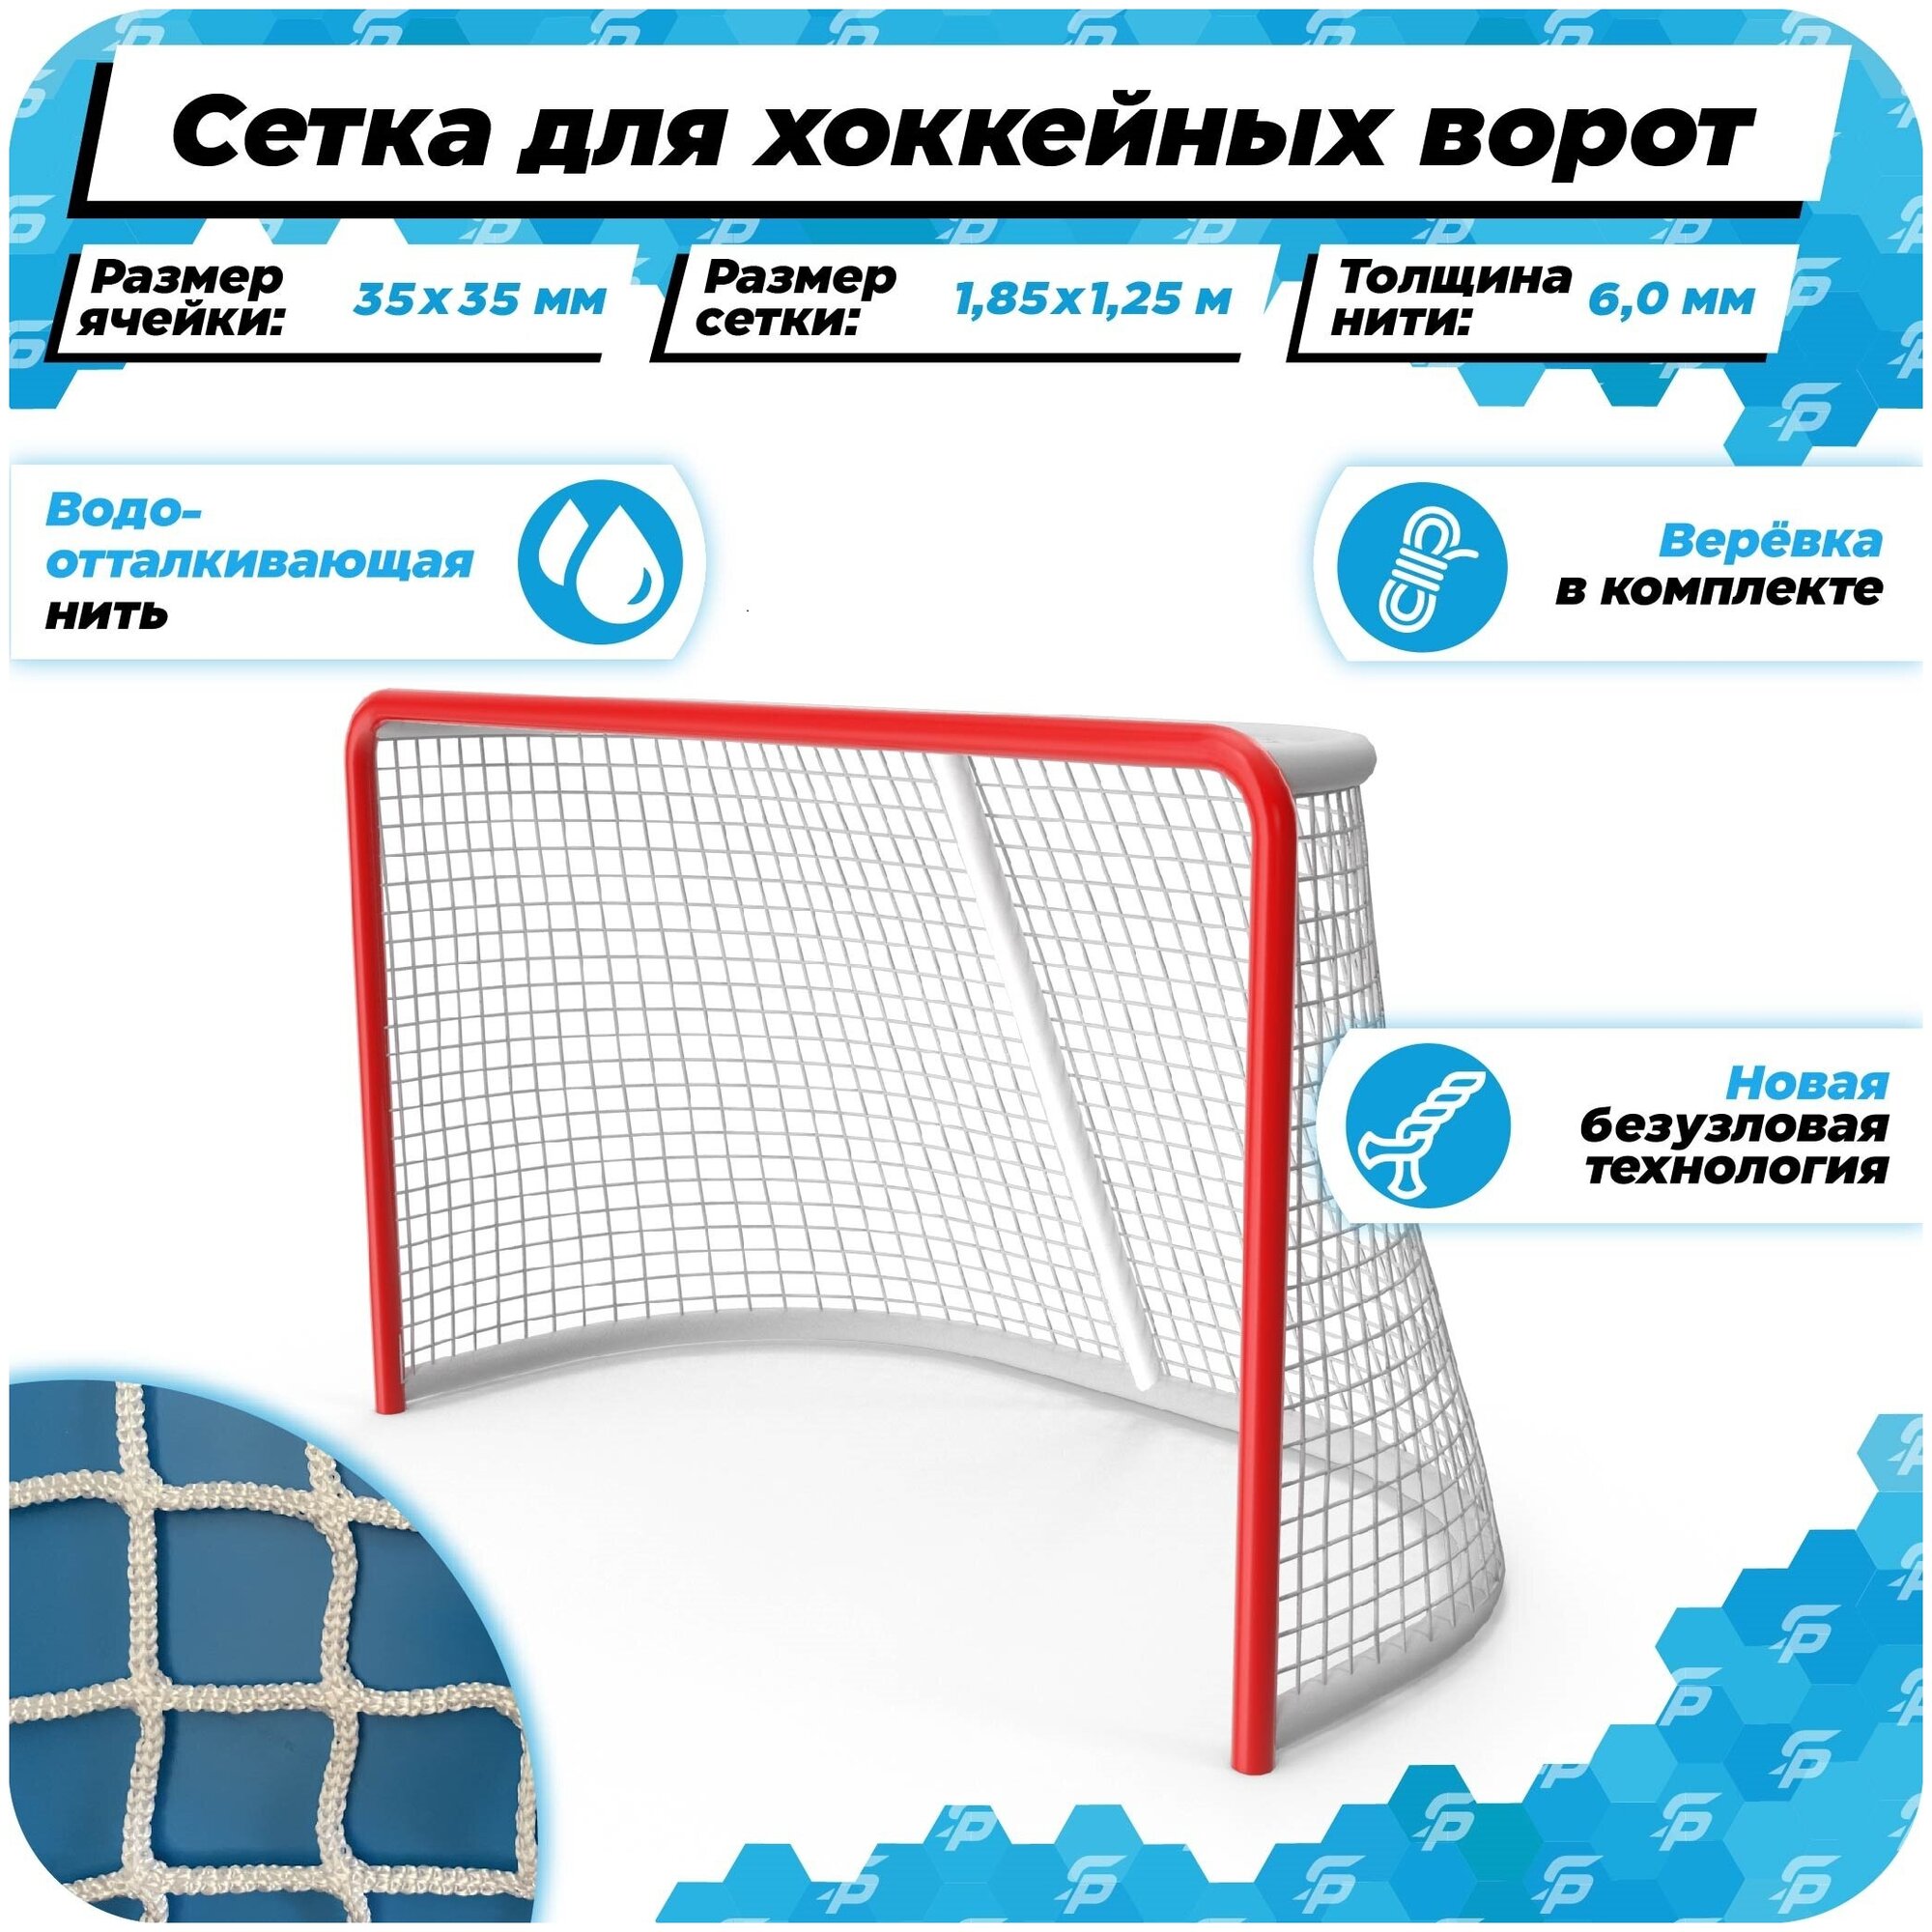 Сетка для хоккейных ворот 1,85 на 1,25 нить 6,0 мм веревка в комплекте